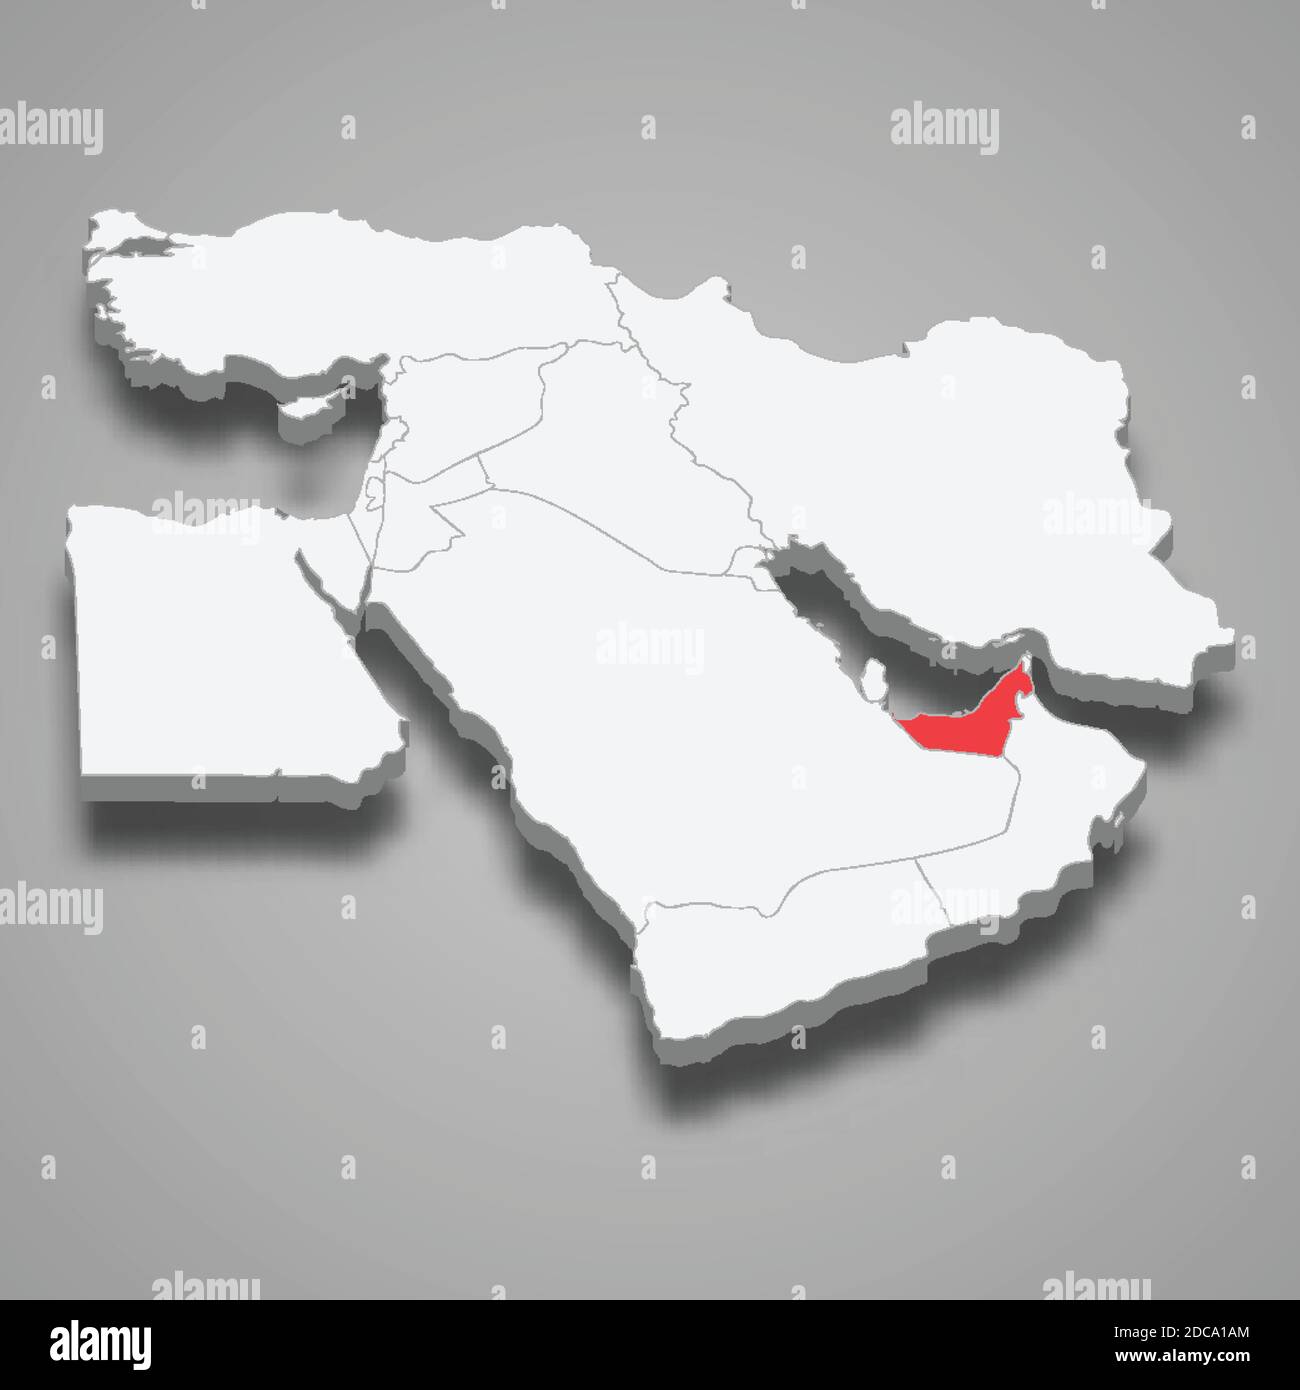 Ubicazione del paese degli Emirati Arabi Uniti all'interno del Medio Oriente 3d isometrico mappa Illustrazione Vettoriale